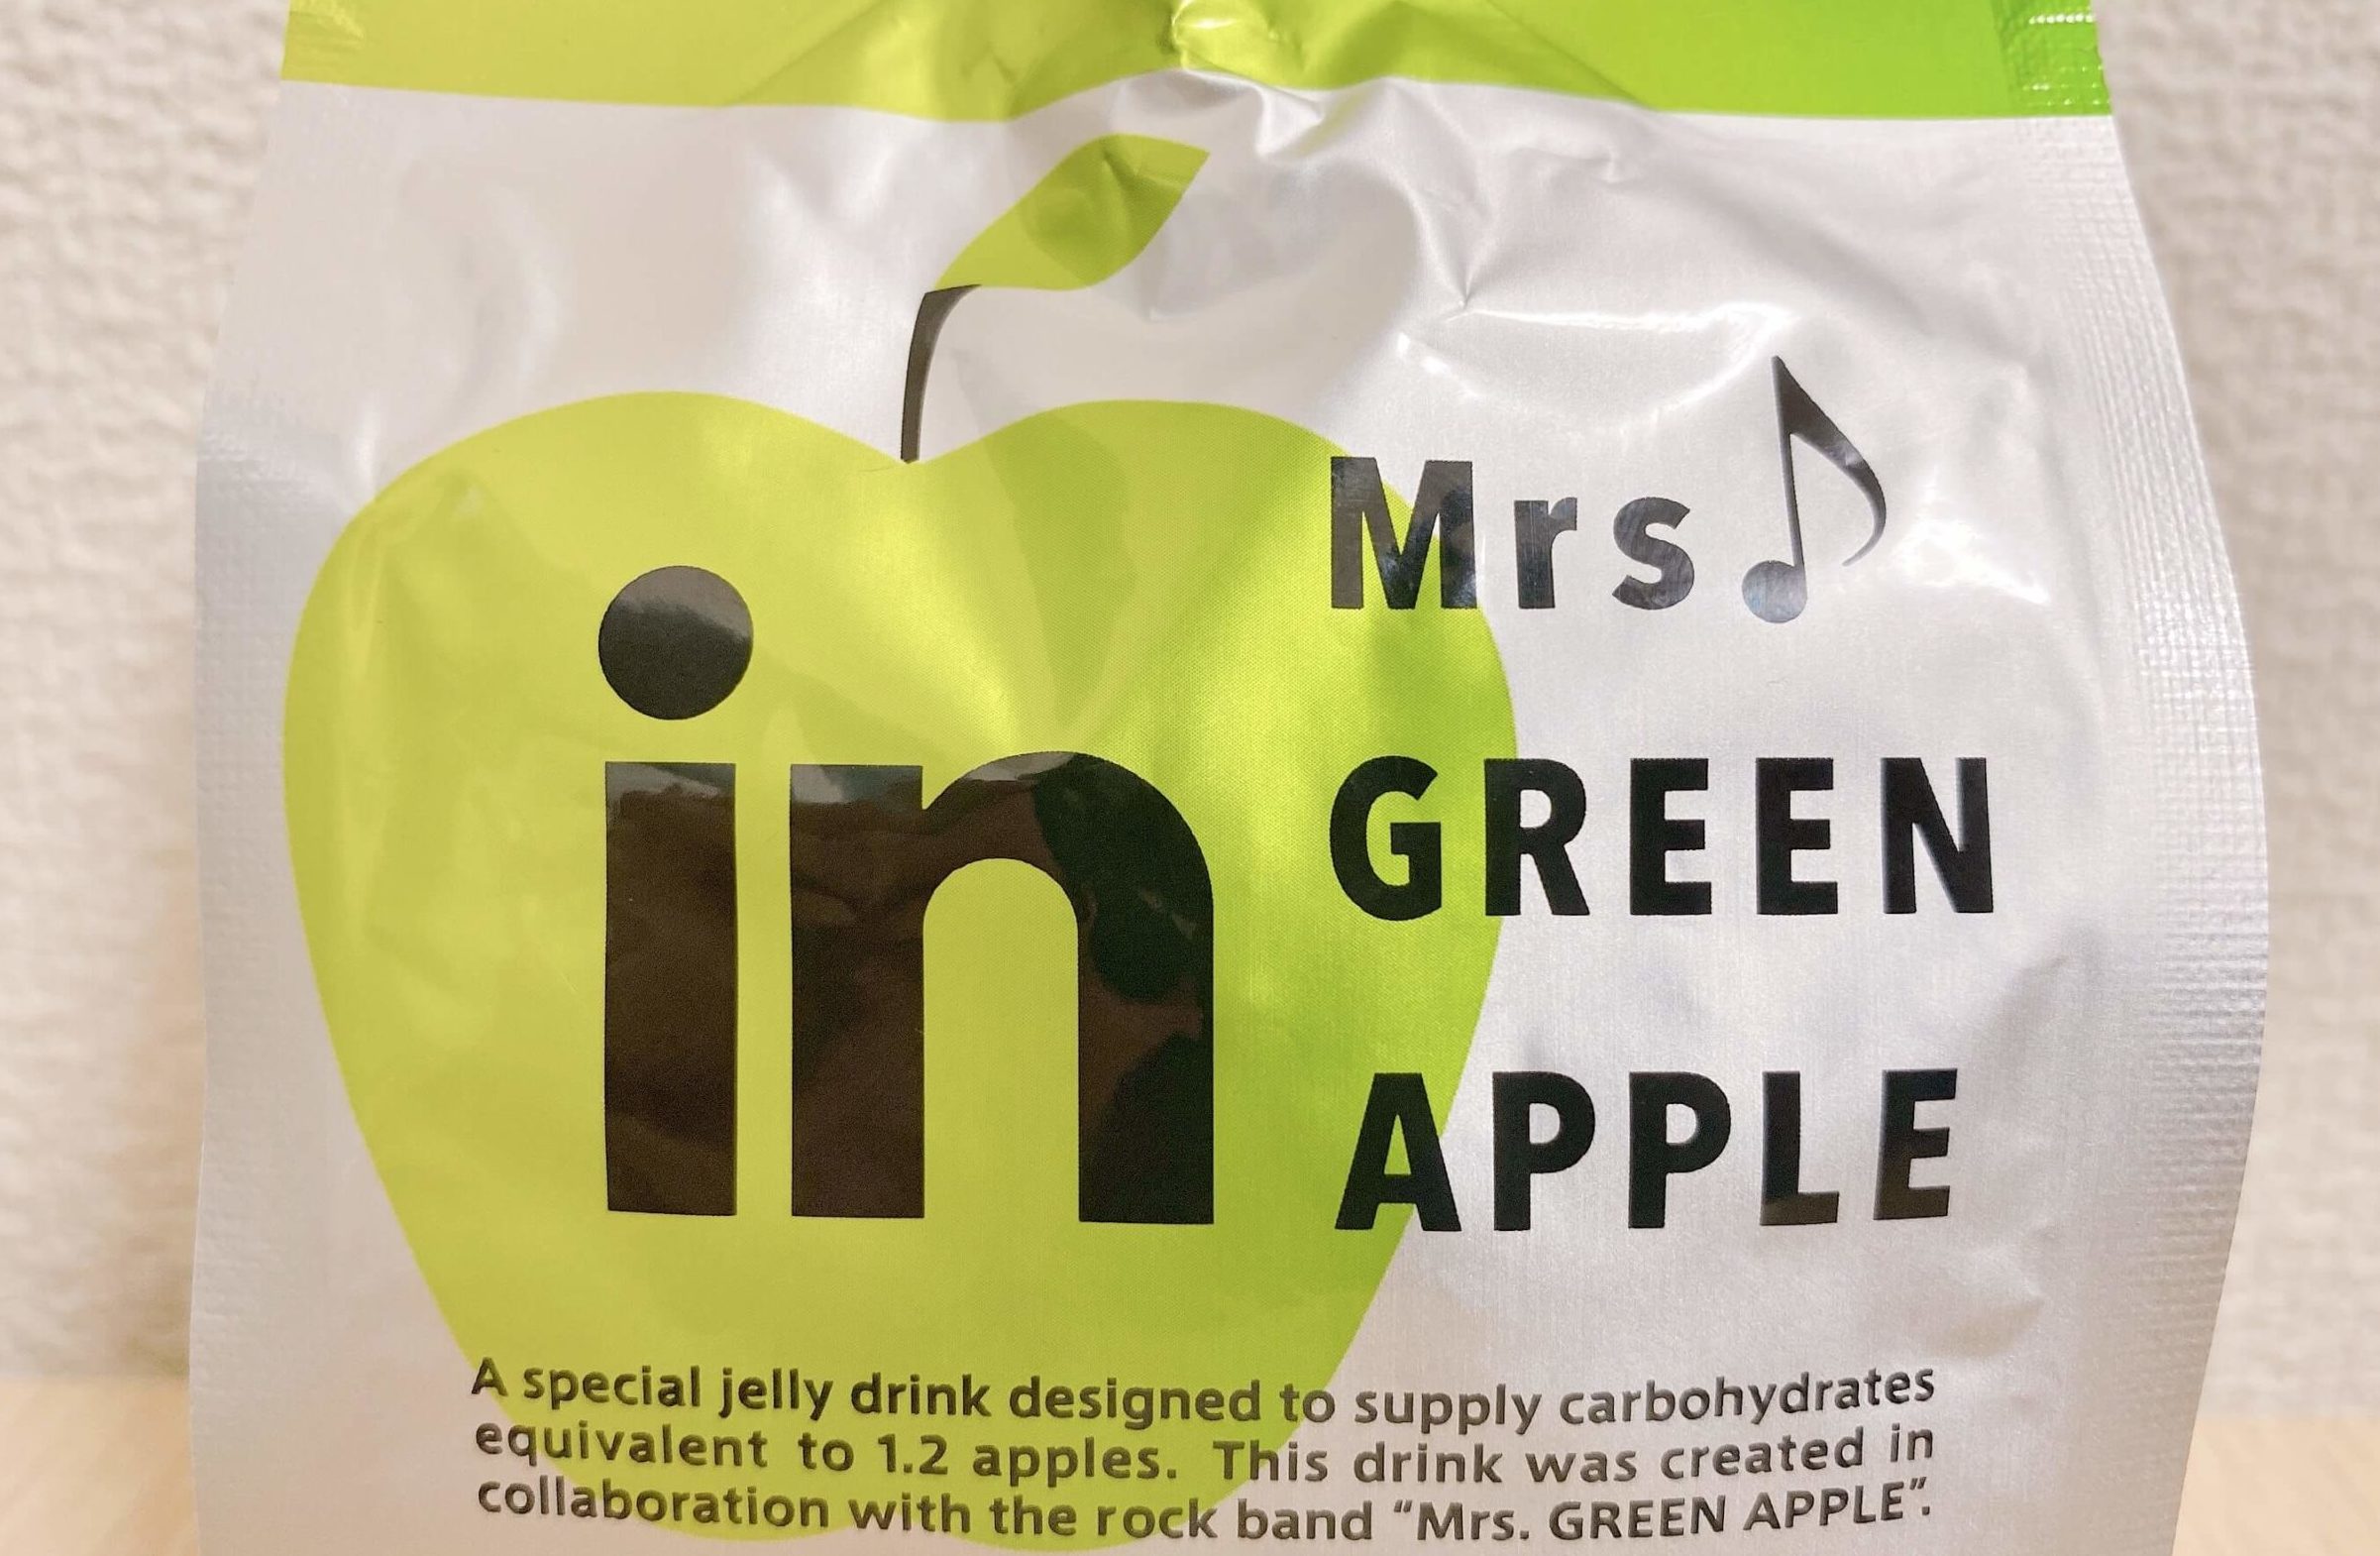 inゼリーのグリーンアップル味のパッケージ